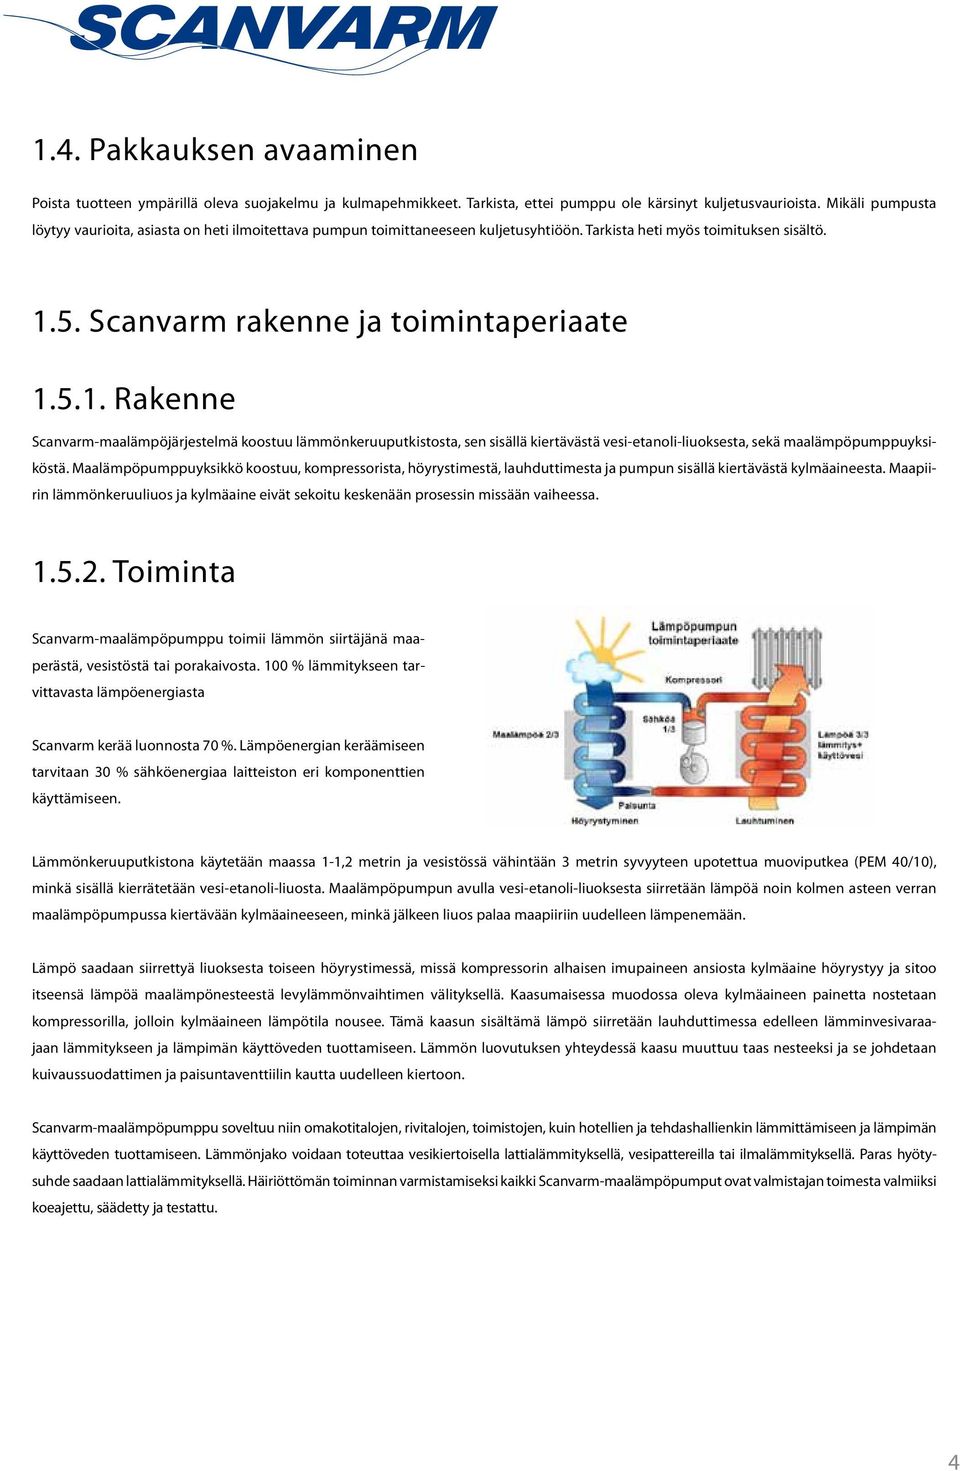 5. Scanvarm rakenne ja toimintaperiaate 1.5.1. Rakenne Scanvarm-maalämpöjärjestelmä koostuu lämmönkeruuputkistosta, sen sisällä kiertävästä vesi-etanoli-liuoksesta, sekä maalämpöpumppuyksiköstä.